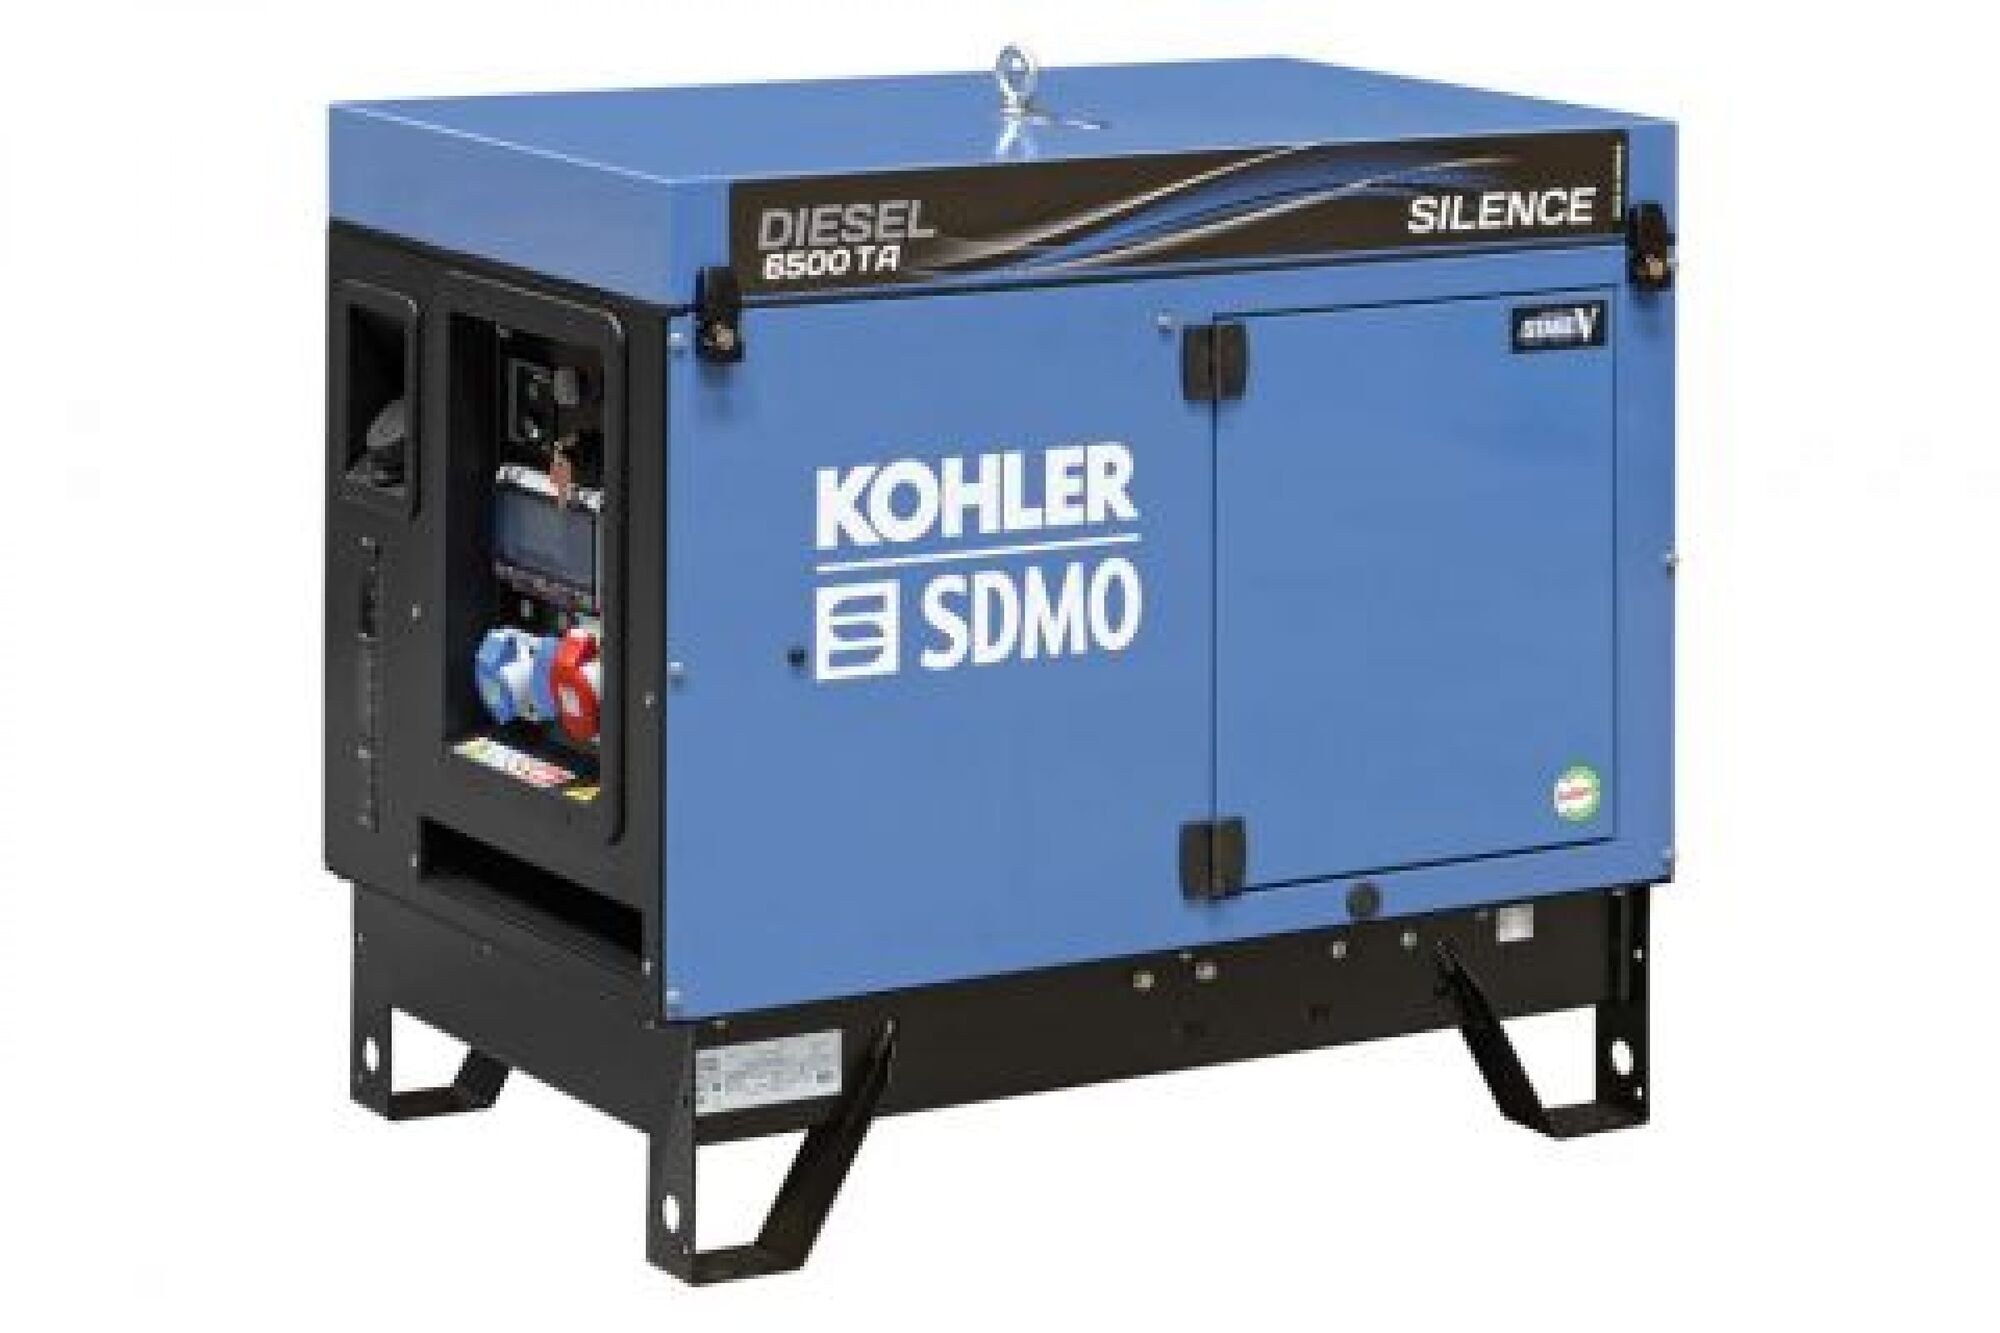 Дизельный генератор KOHLER-SDMO Diesel 6500 TA Silence C5 5.2 кВт, 380/220 В 101150805